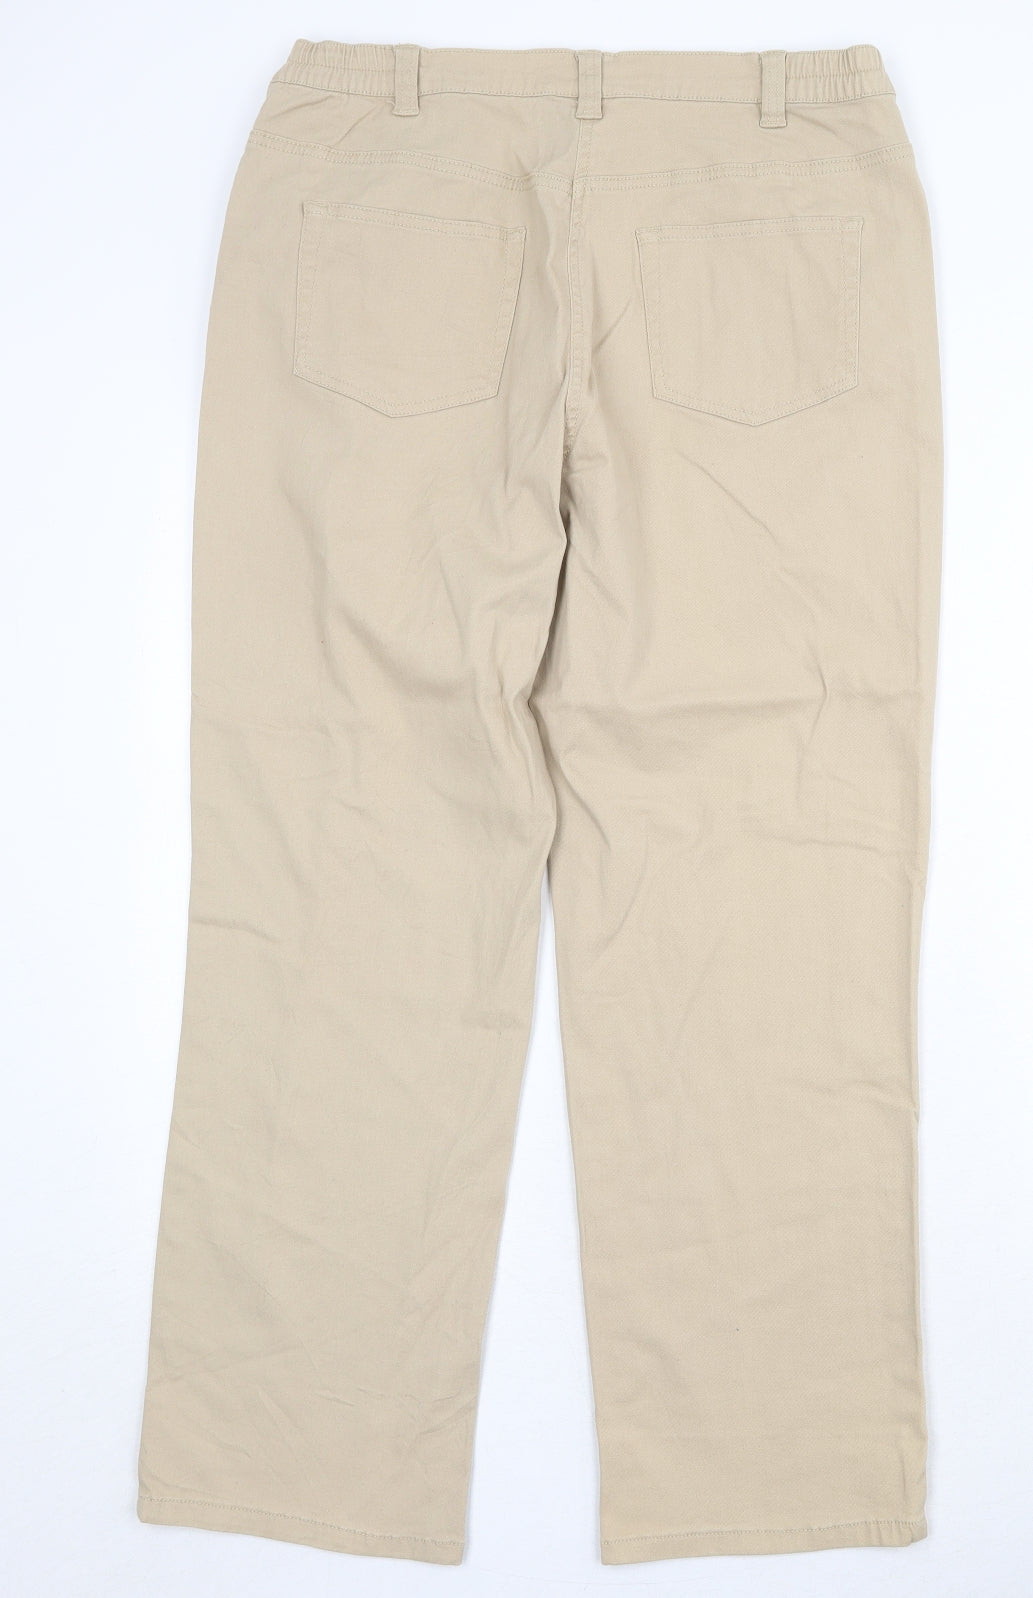 Damart Womens Beige Cotton Trousers Size 16 Regular Zip